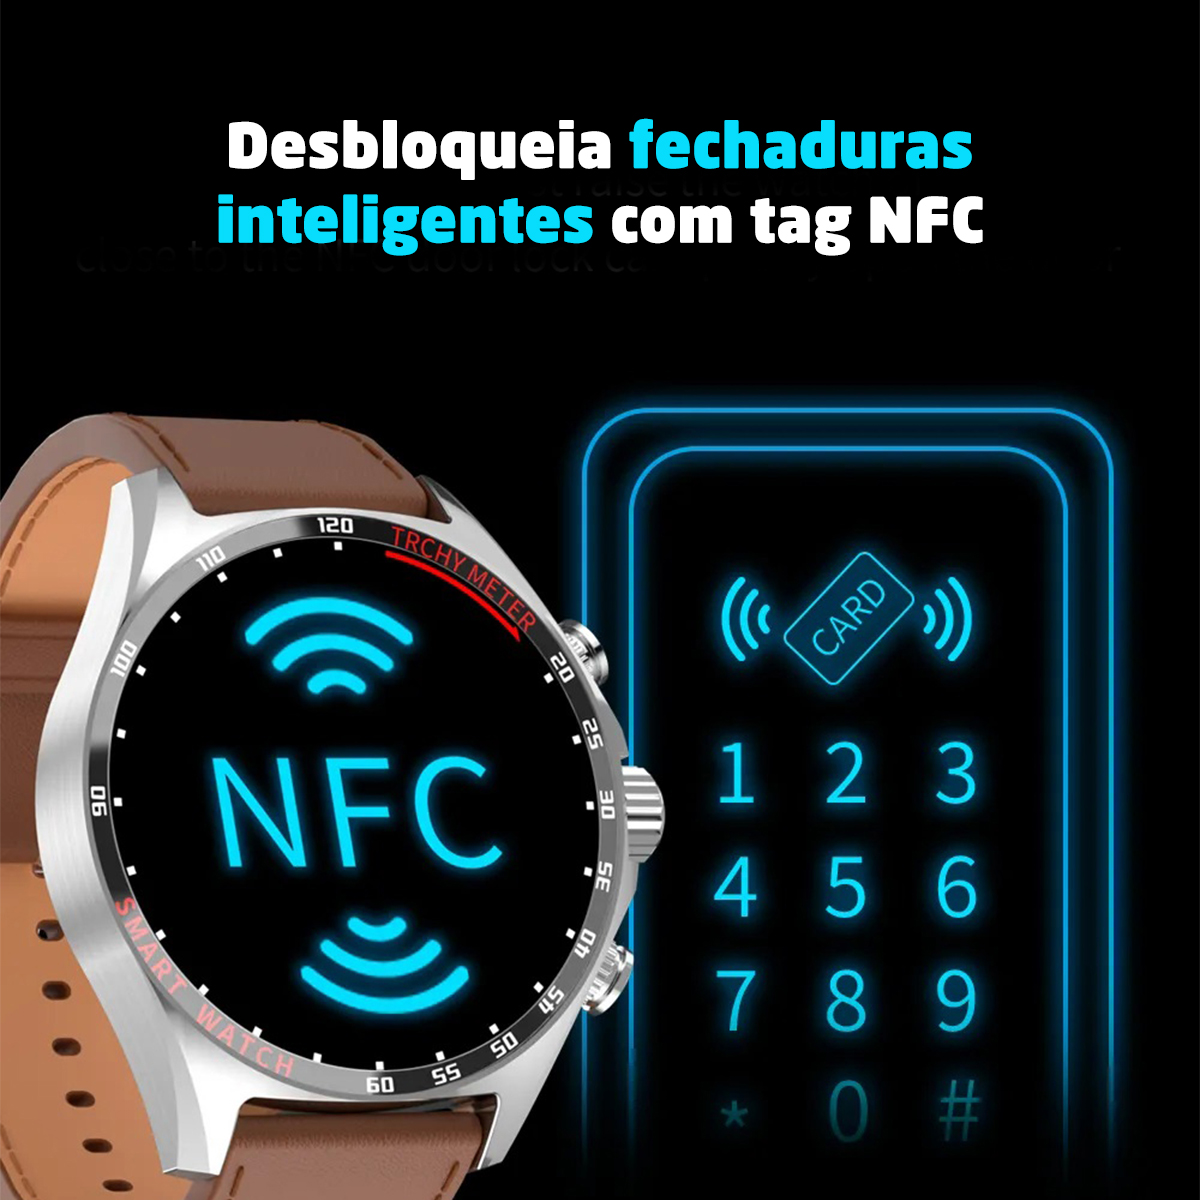 relógio que desbloqueia fechadura inteligente por aproximação, TAG NFC, tecnologia